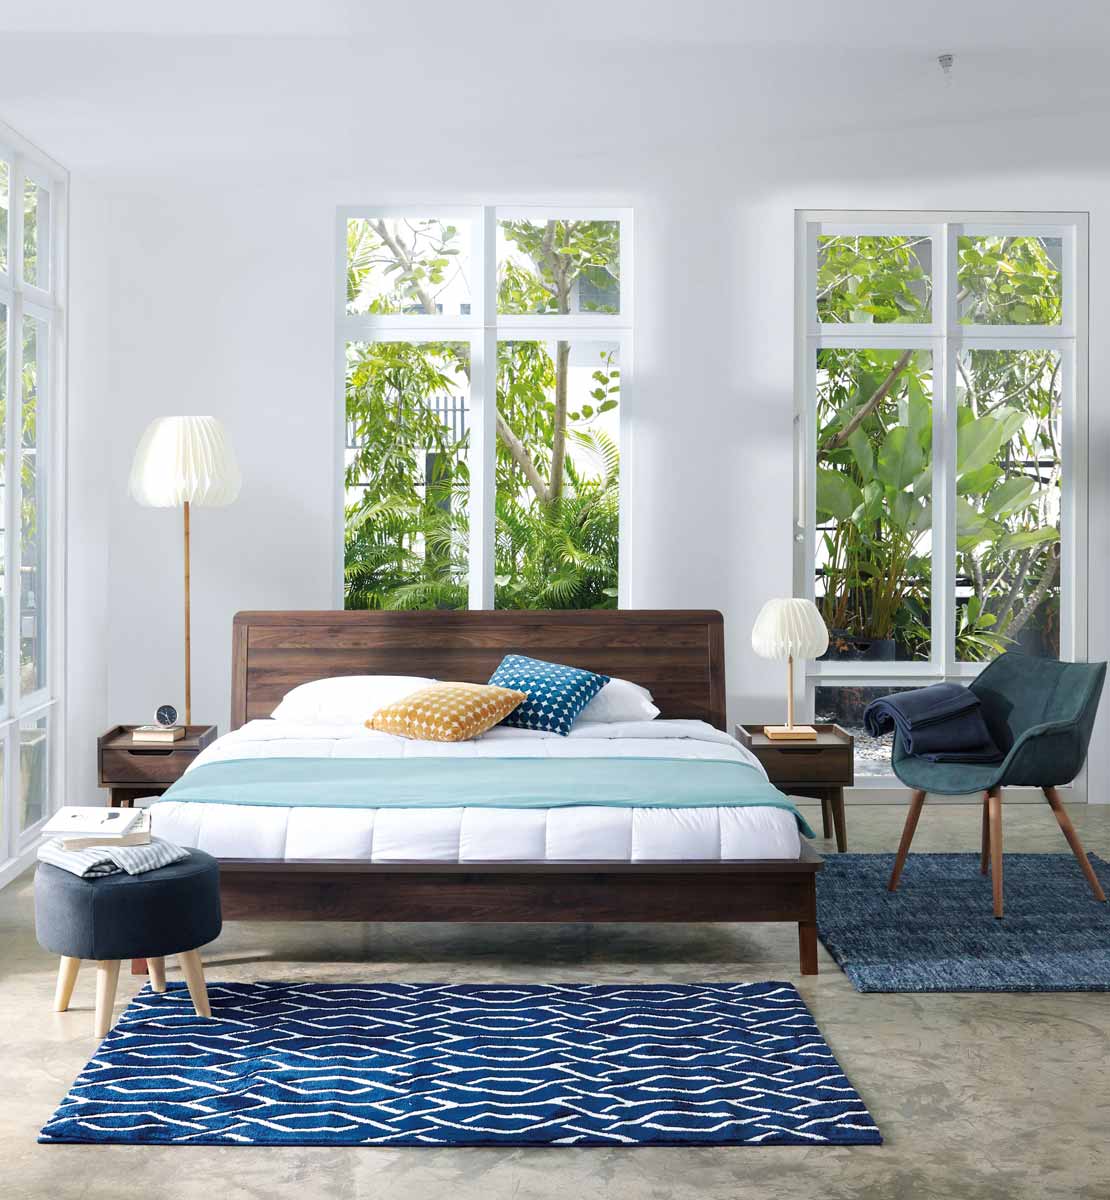 ánh sáng tự nhiên cũng là cách decor phòng ngủ theo phong cách tối giản